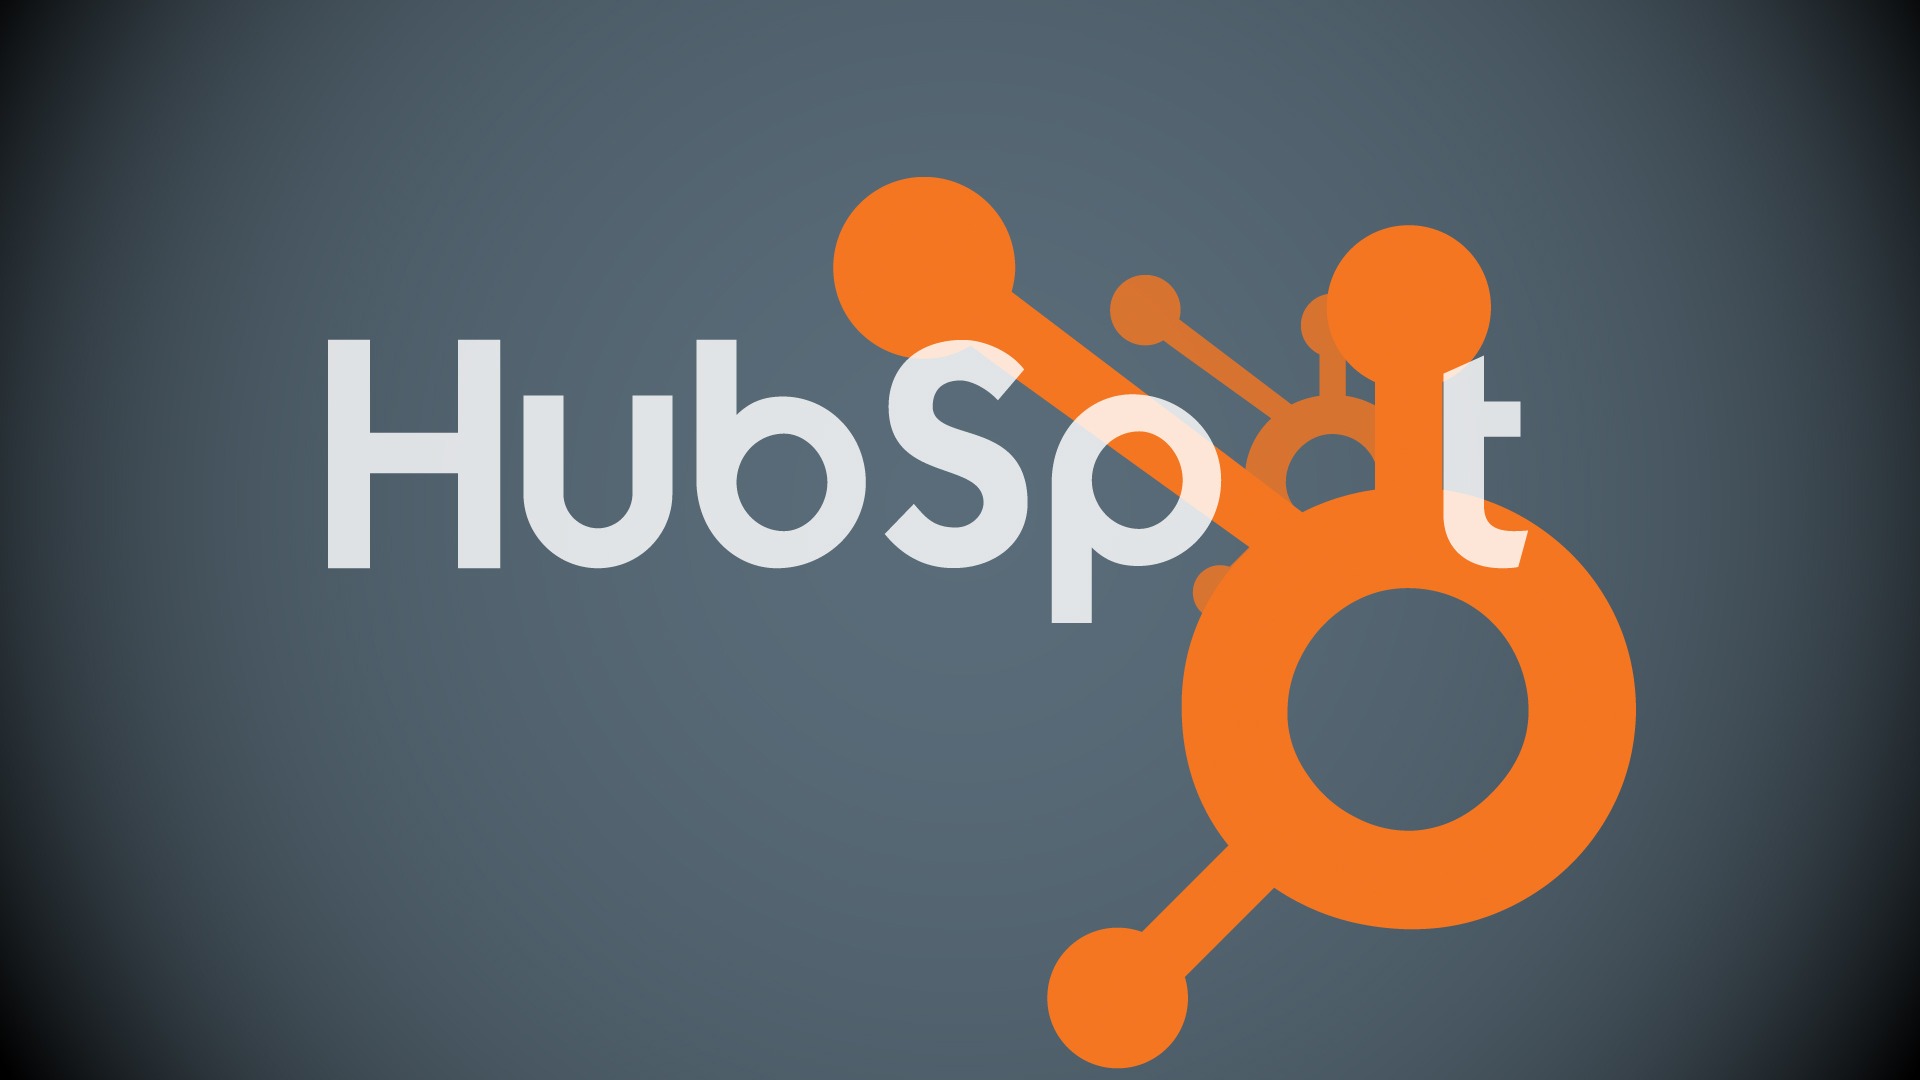 Digital Marketing Giants Hubspot Announce Dublin Jobs Boost